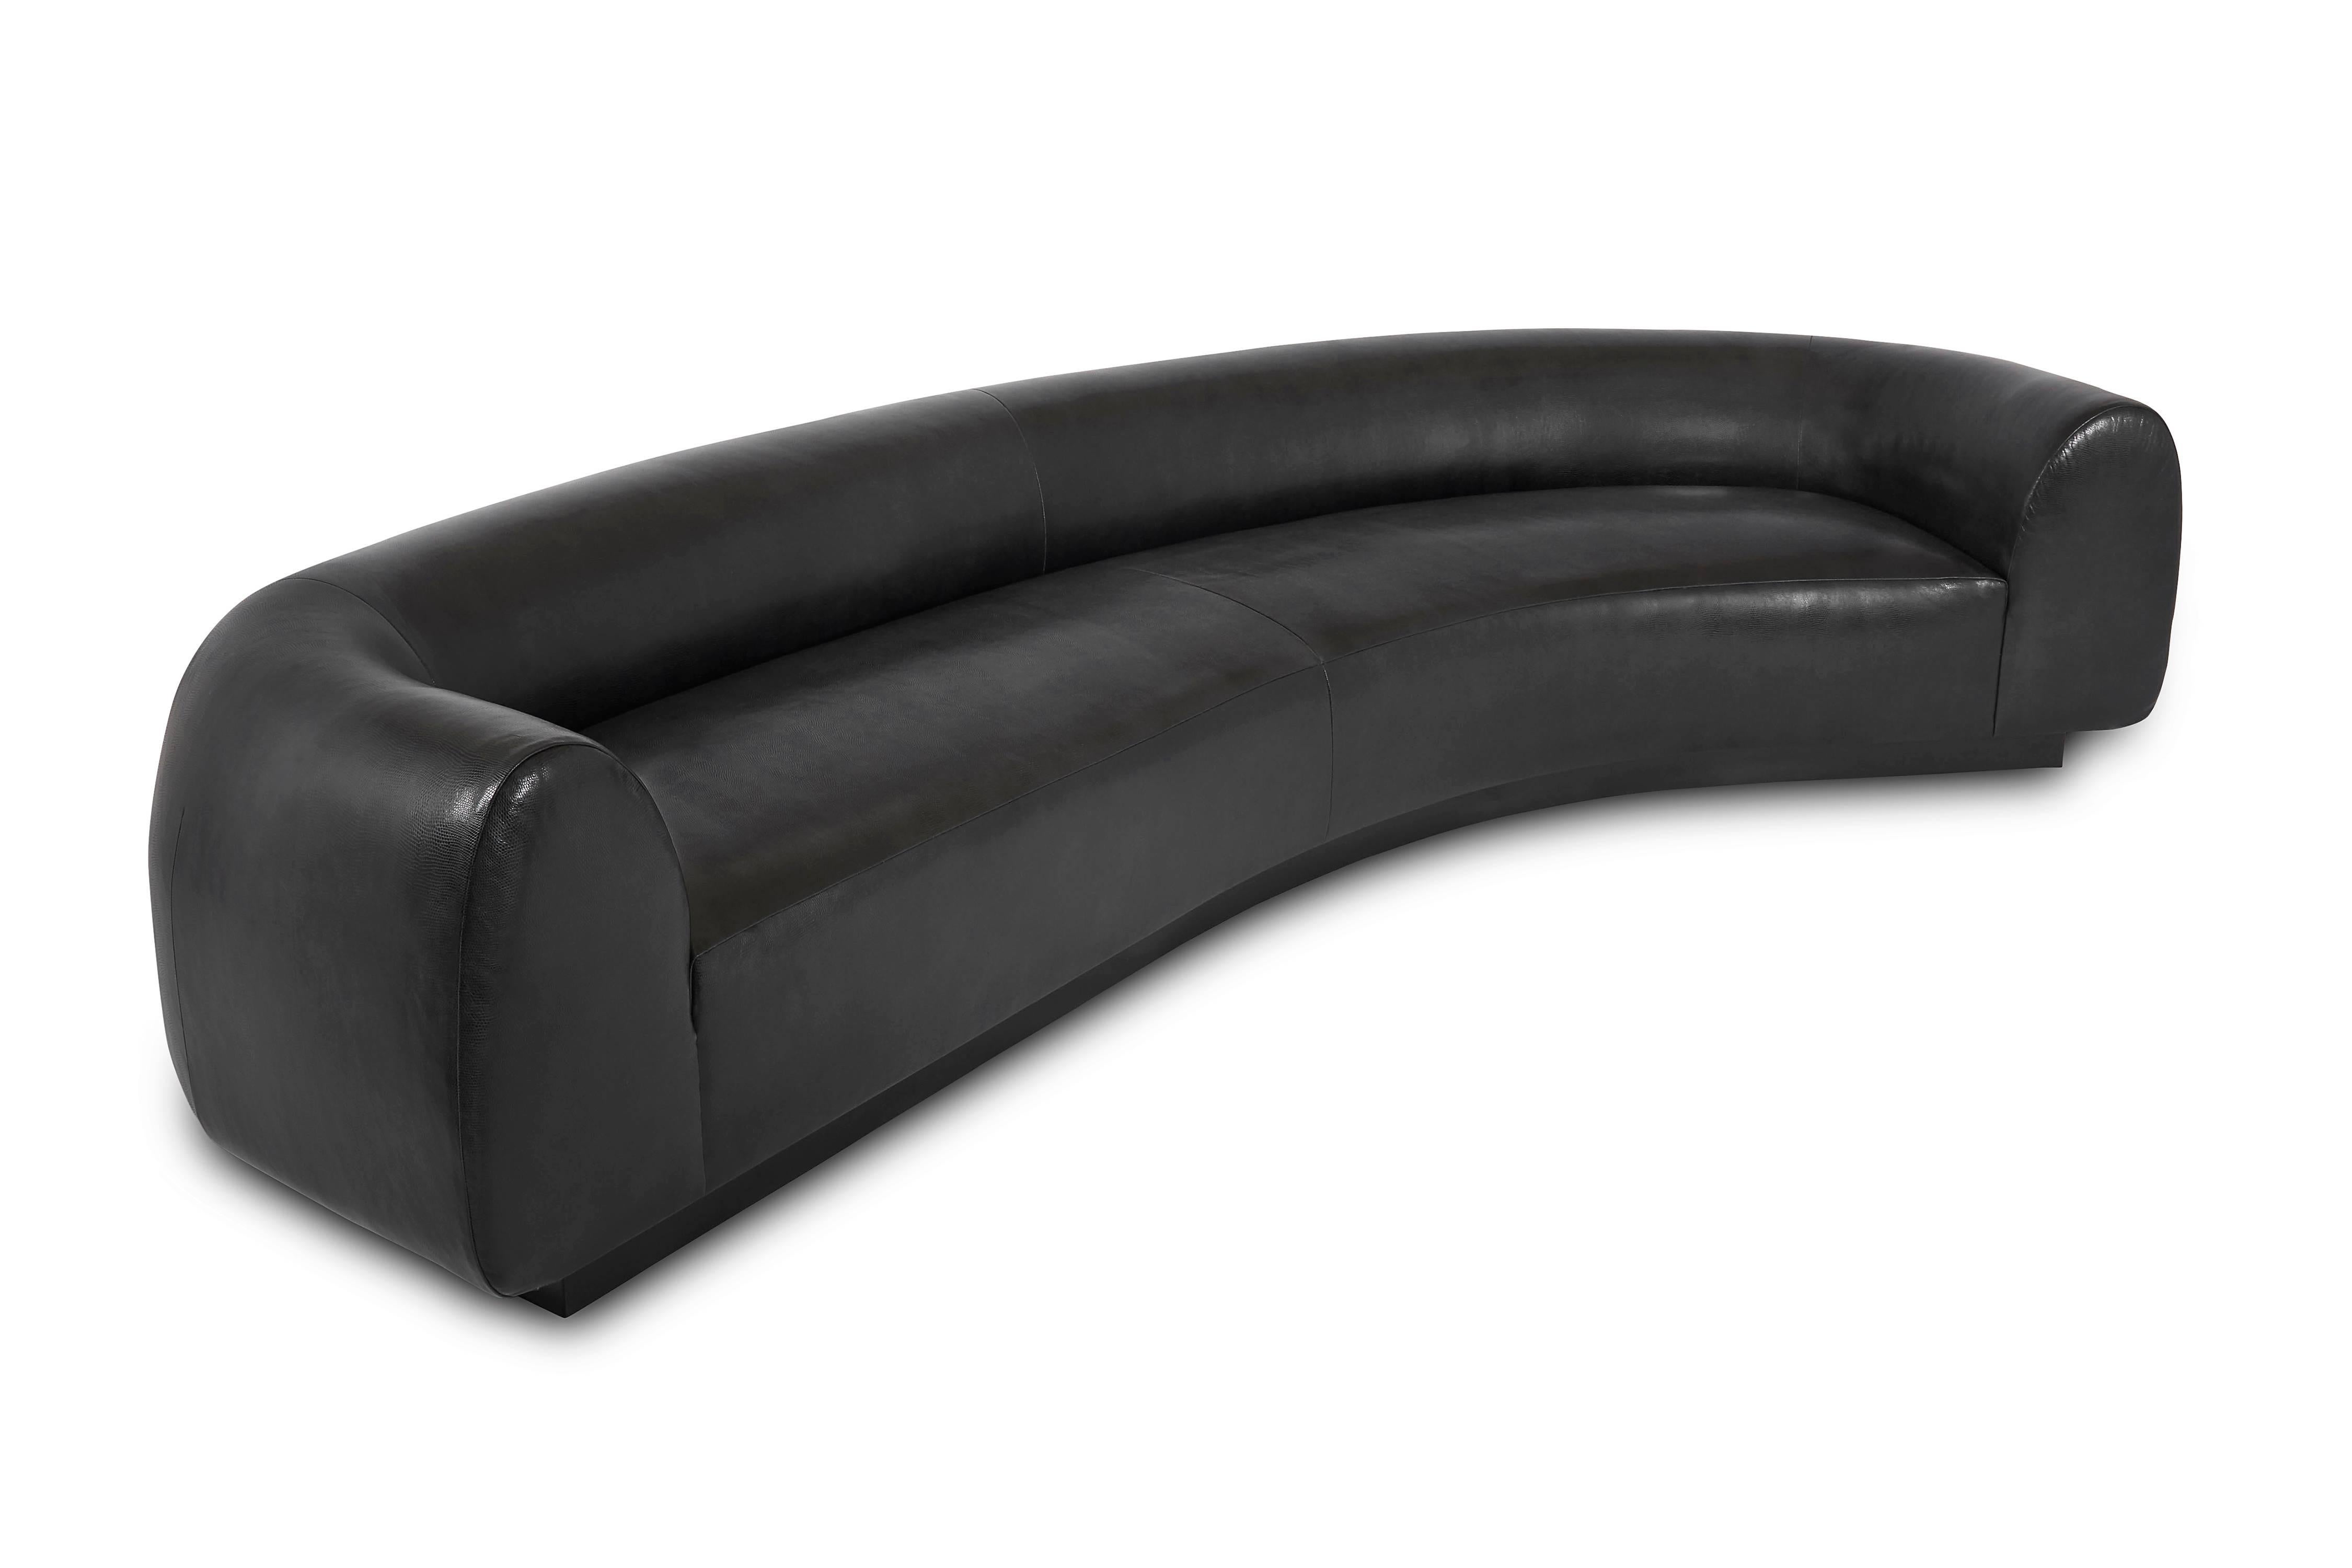 Ce canapé surdimensionné allie confort et lignes épurées et modernes. Avec sa base en laque noire et son cuir gaufré, le canapé destino est l'exemple même du confort luxueux.